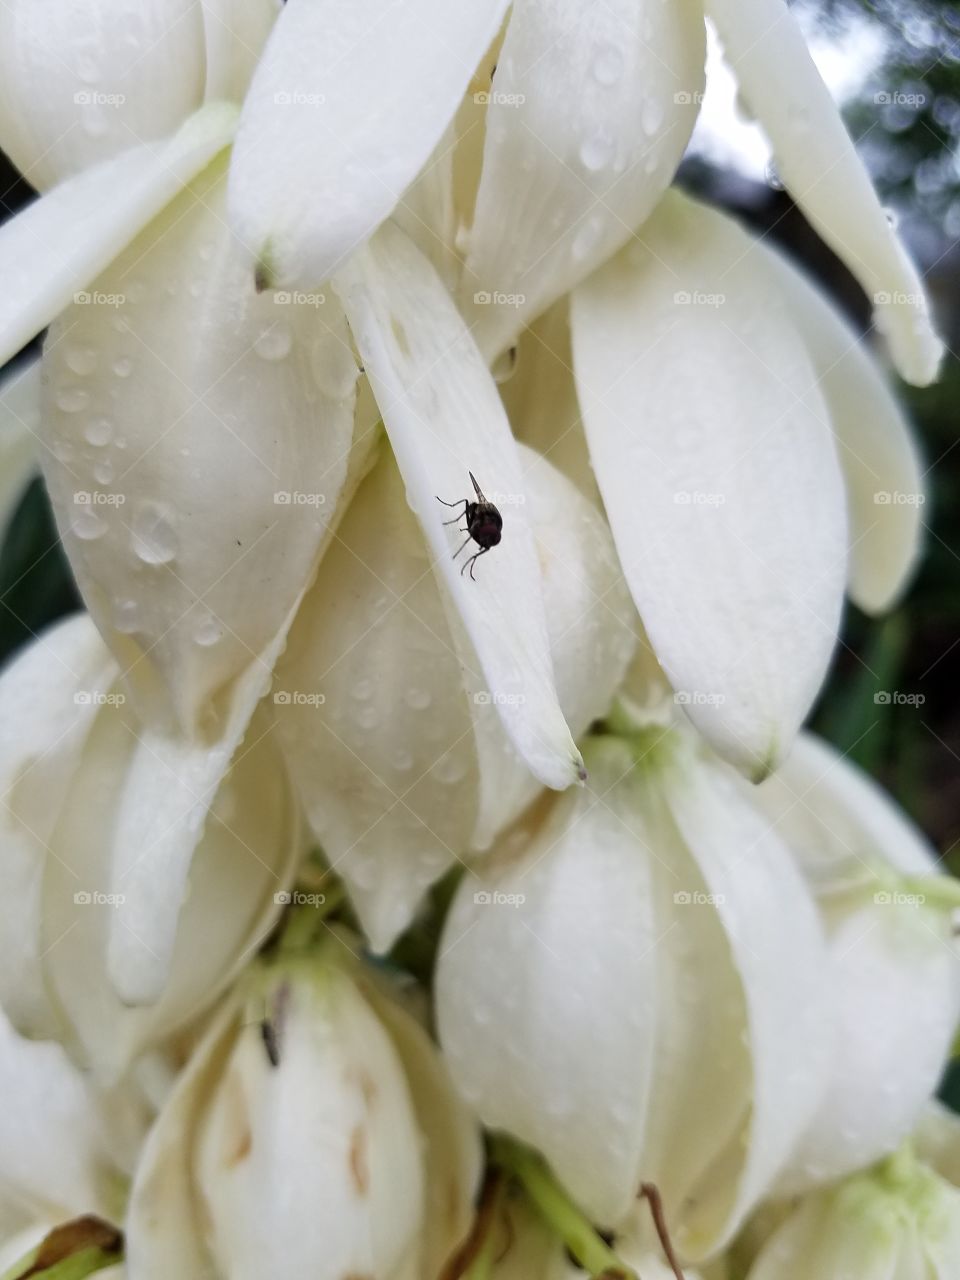 fly on yuka plant